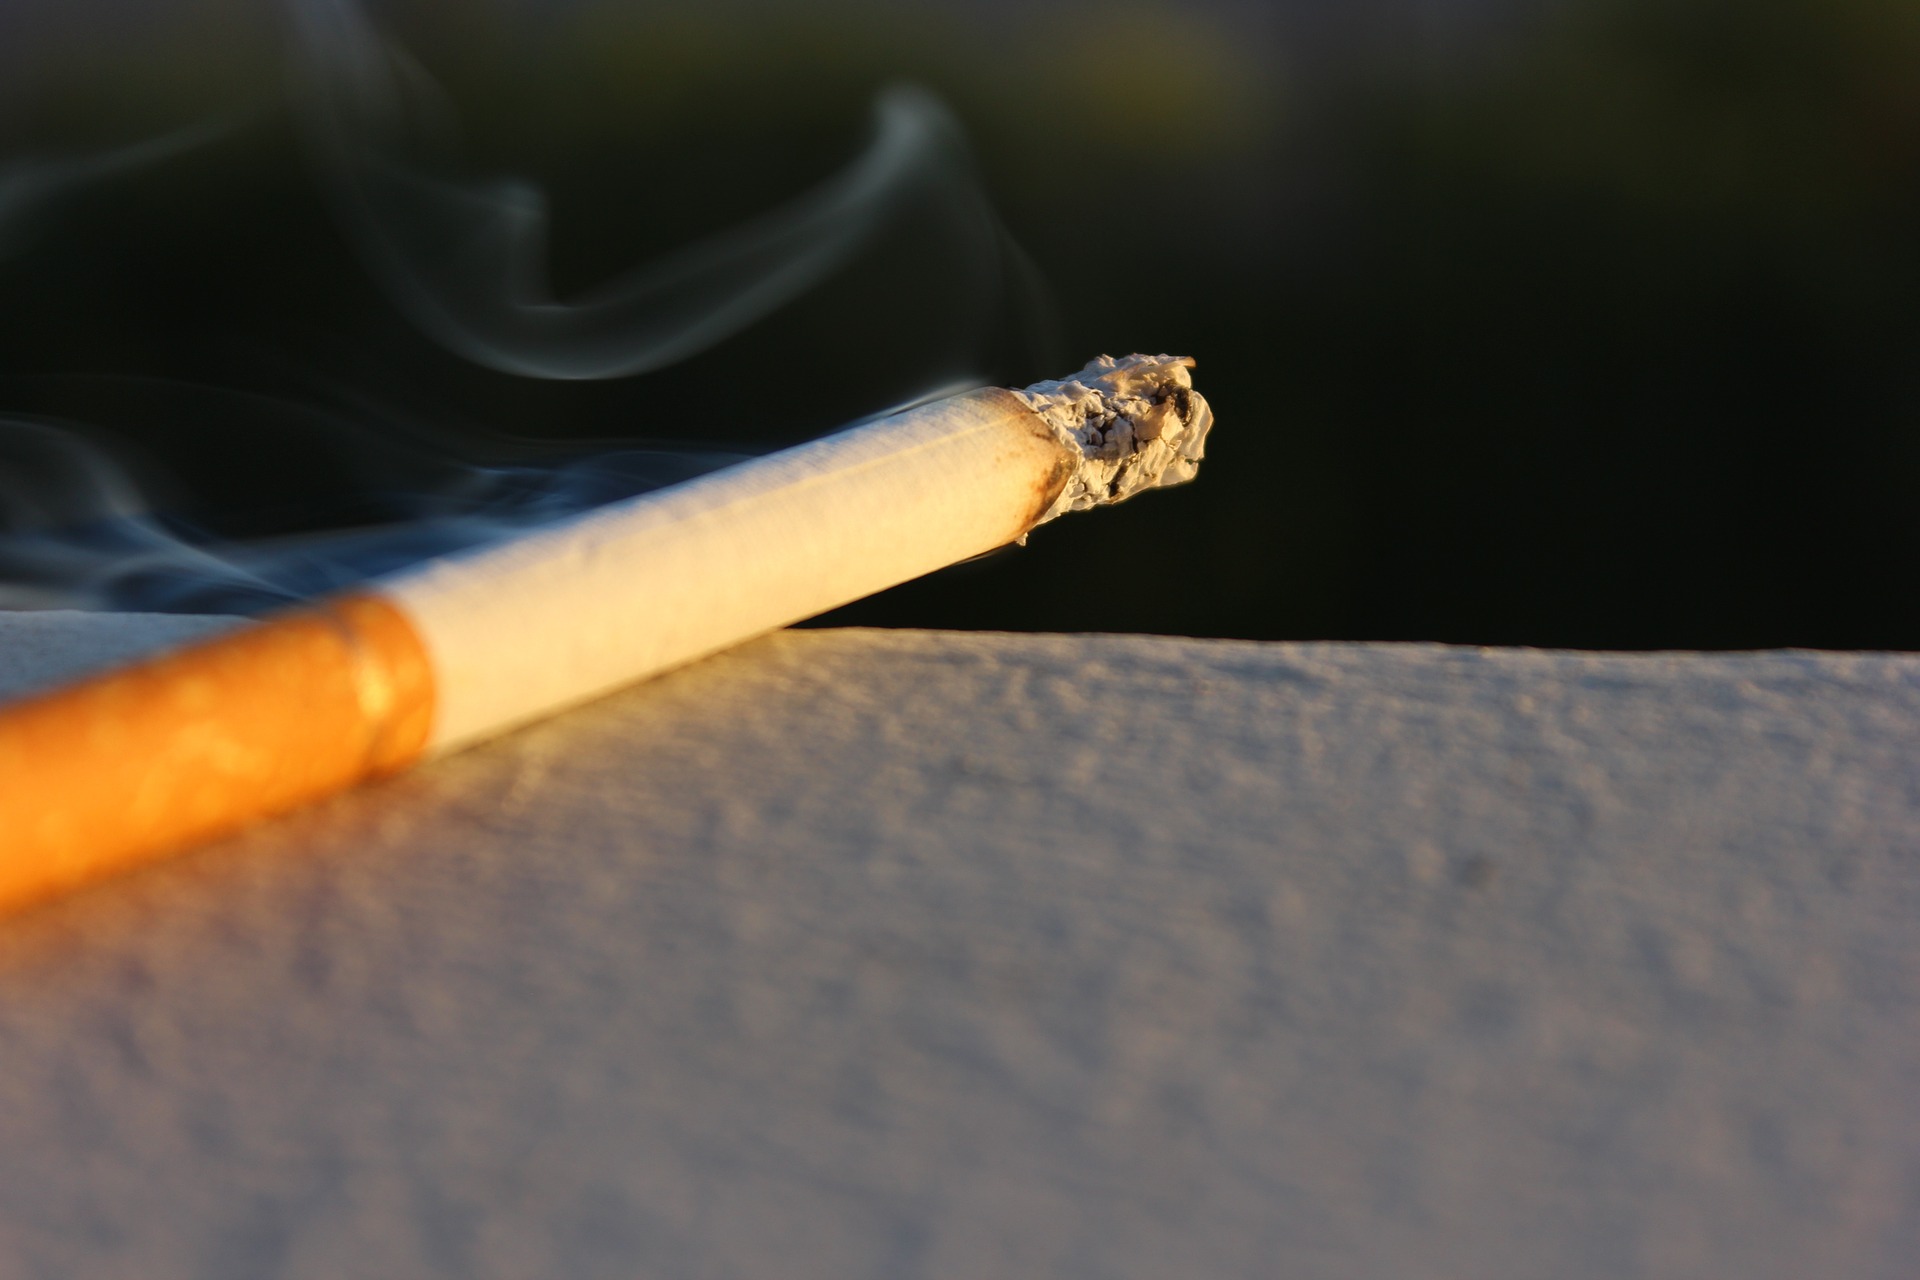 Philip Morris to Release “Marlboro M” Marijuana Cigarettes?